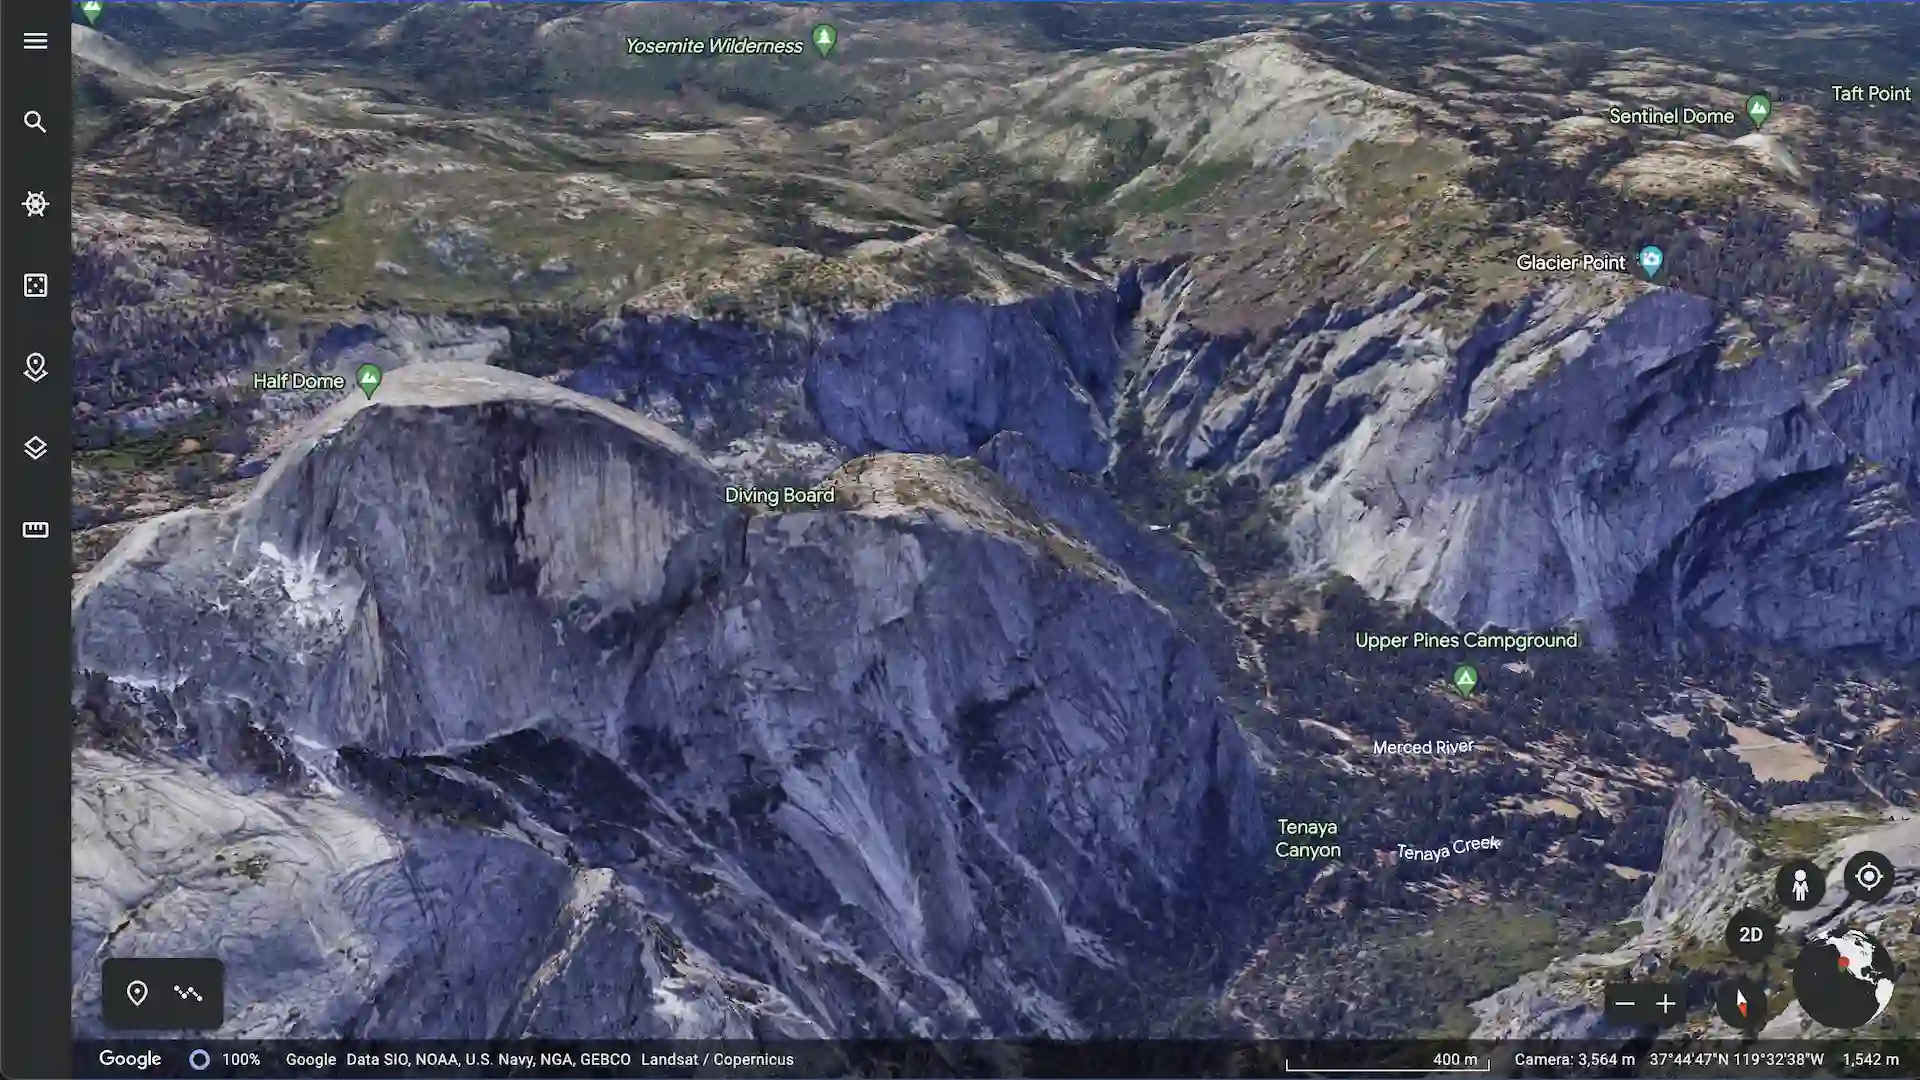 Imagen de la interfaz de usuario de Google Earth con el Half Dome del parque de Yosemite